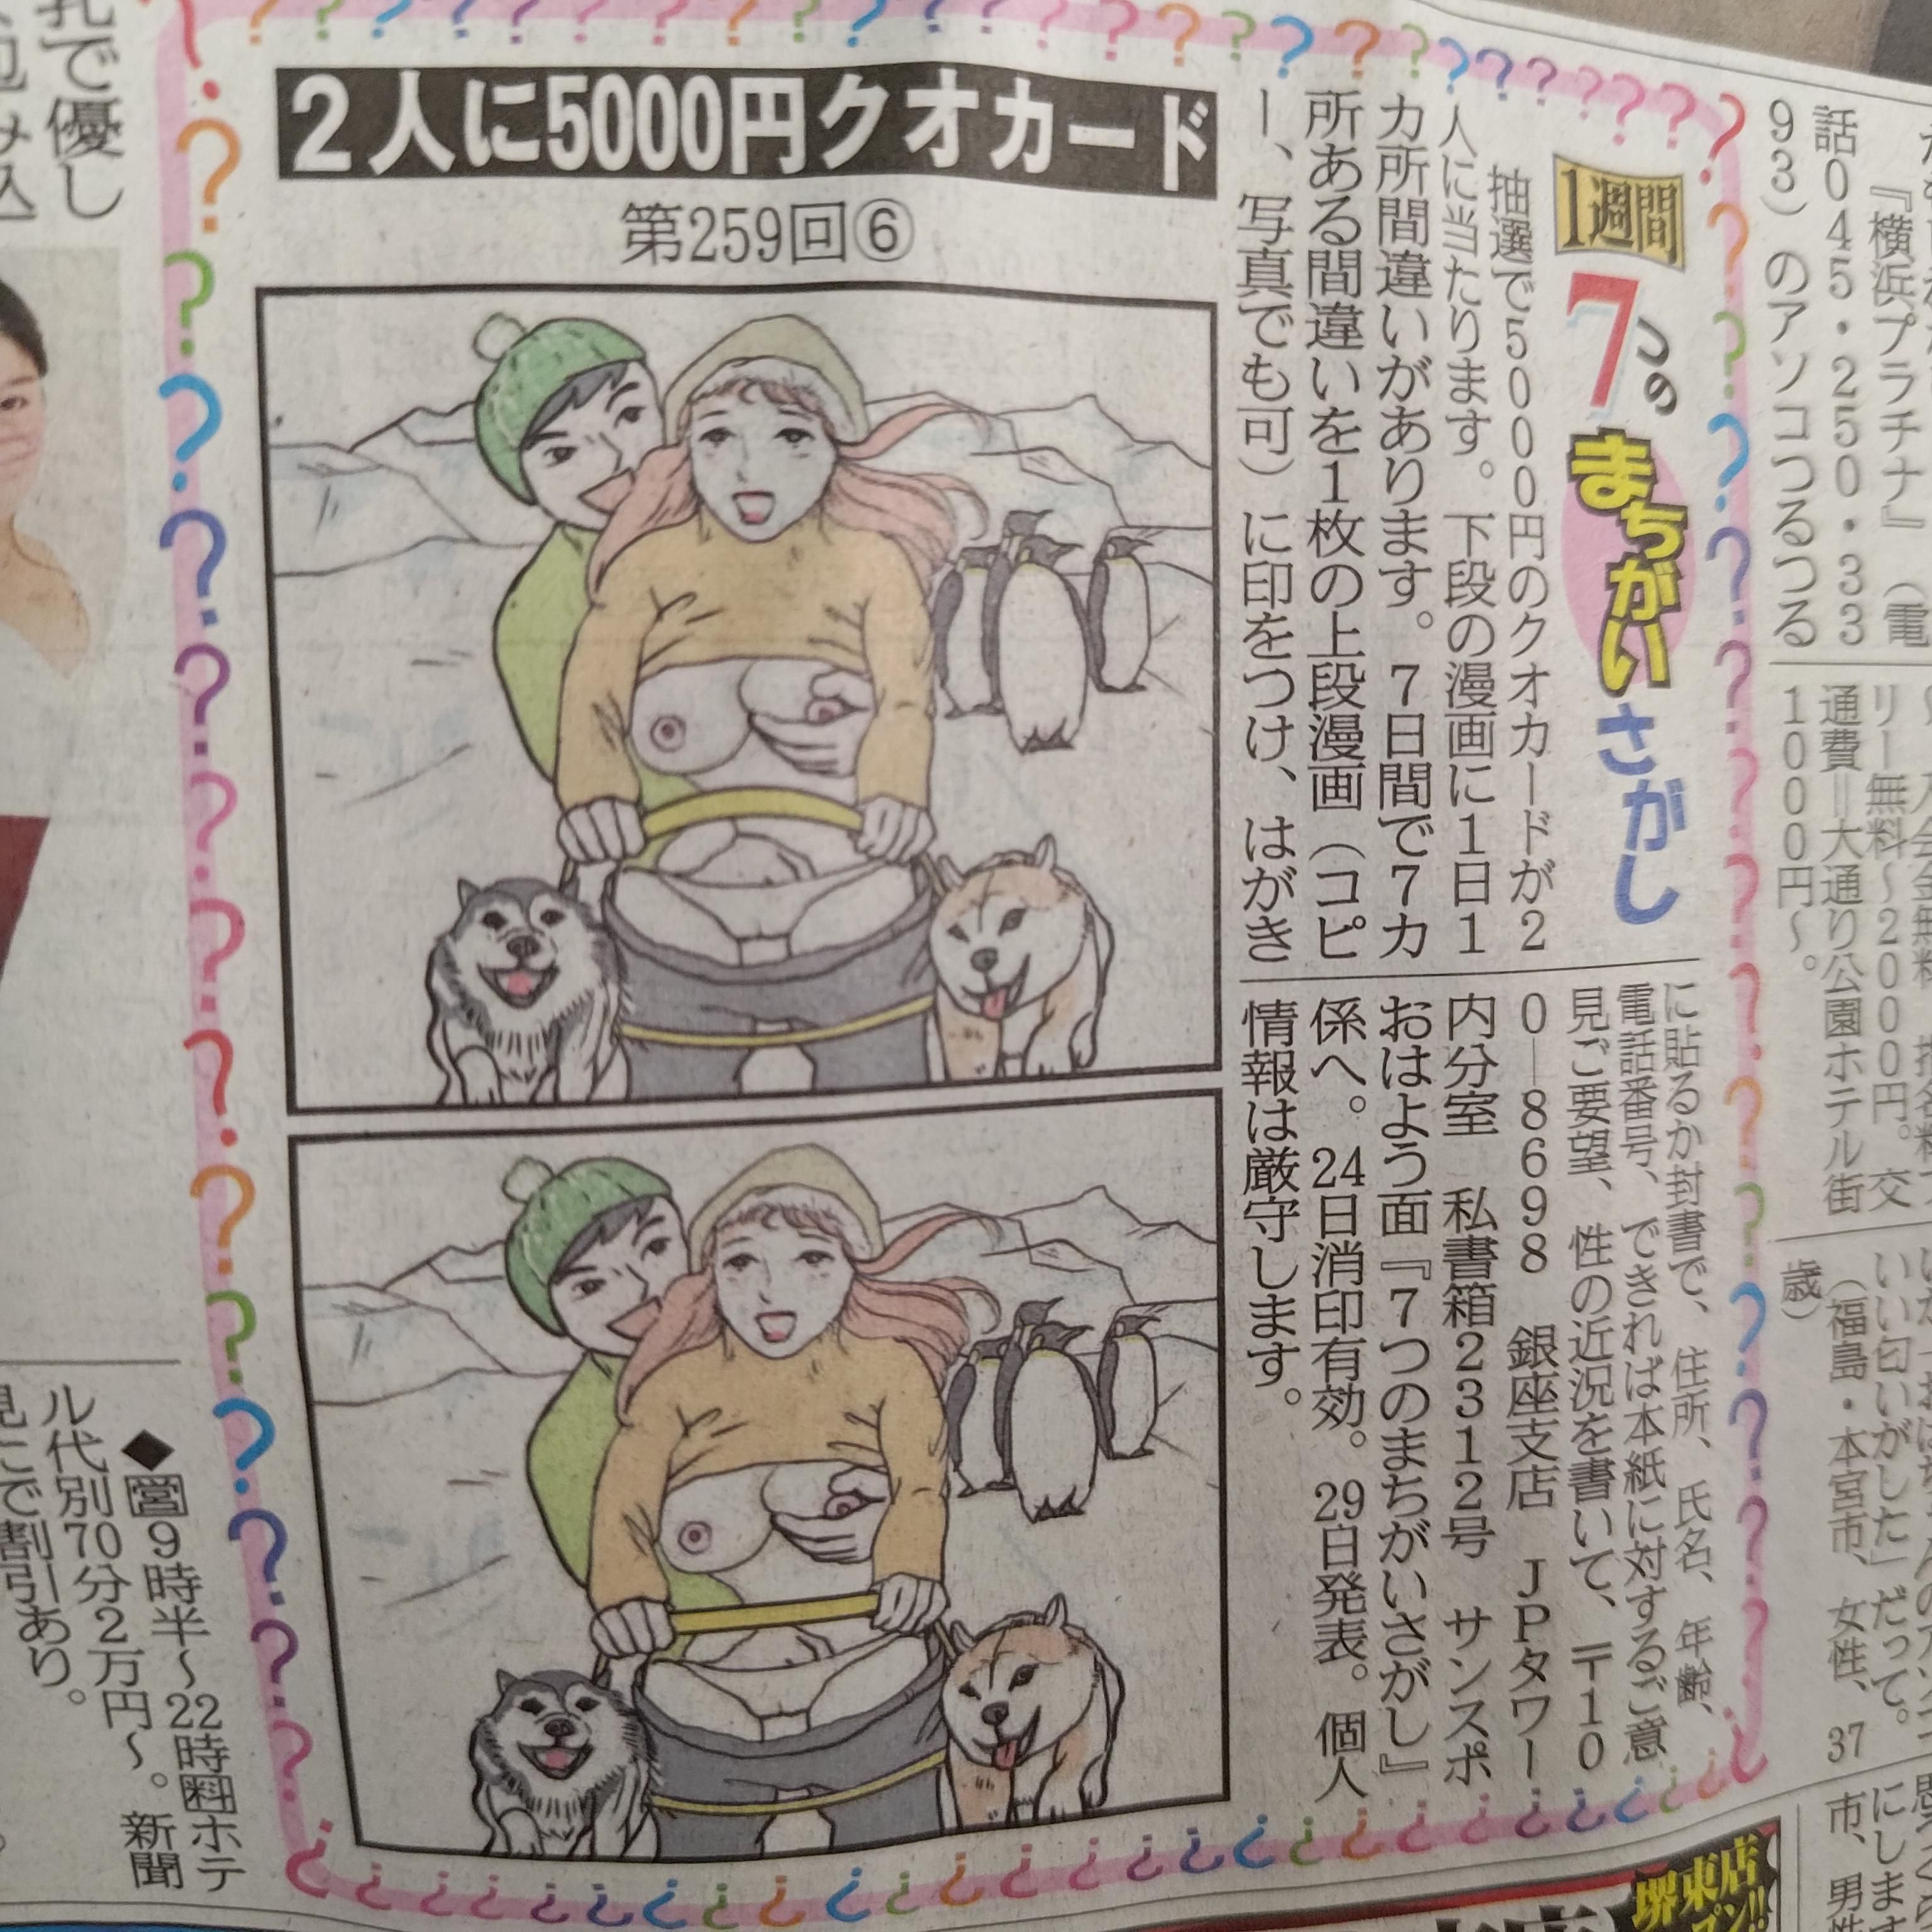 【Image】Sankei Sports' mistake finding is too erotic wwwwwwwwwwww 1